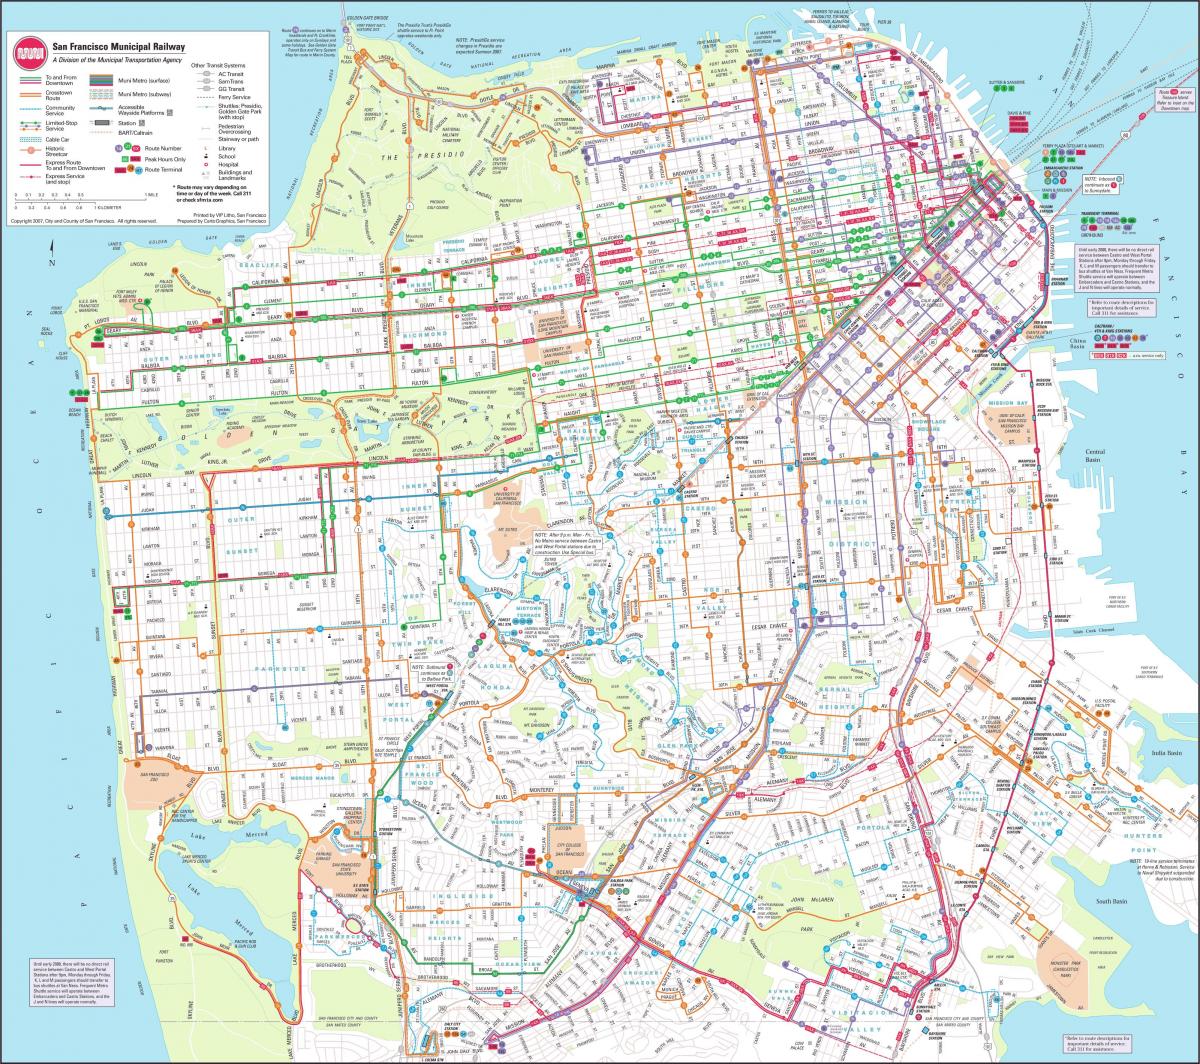 Kaart van San Francisco munisipale spoorweg